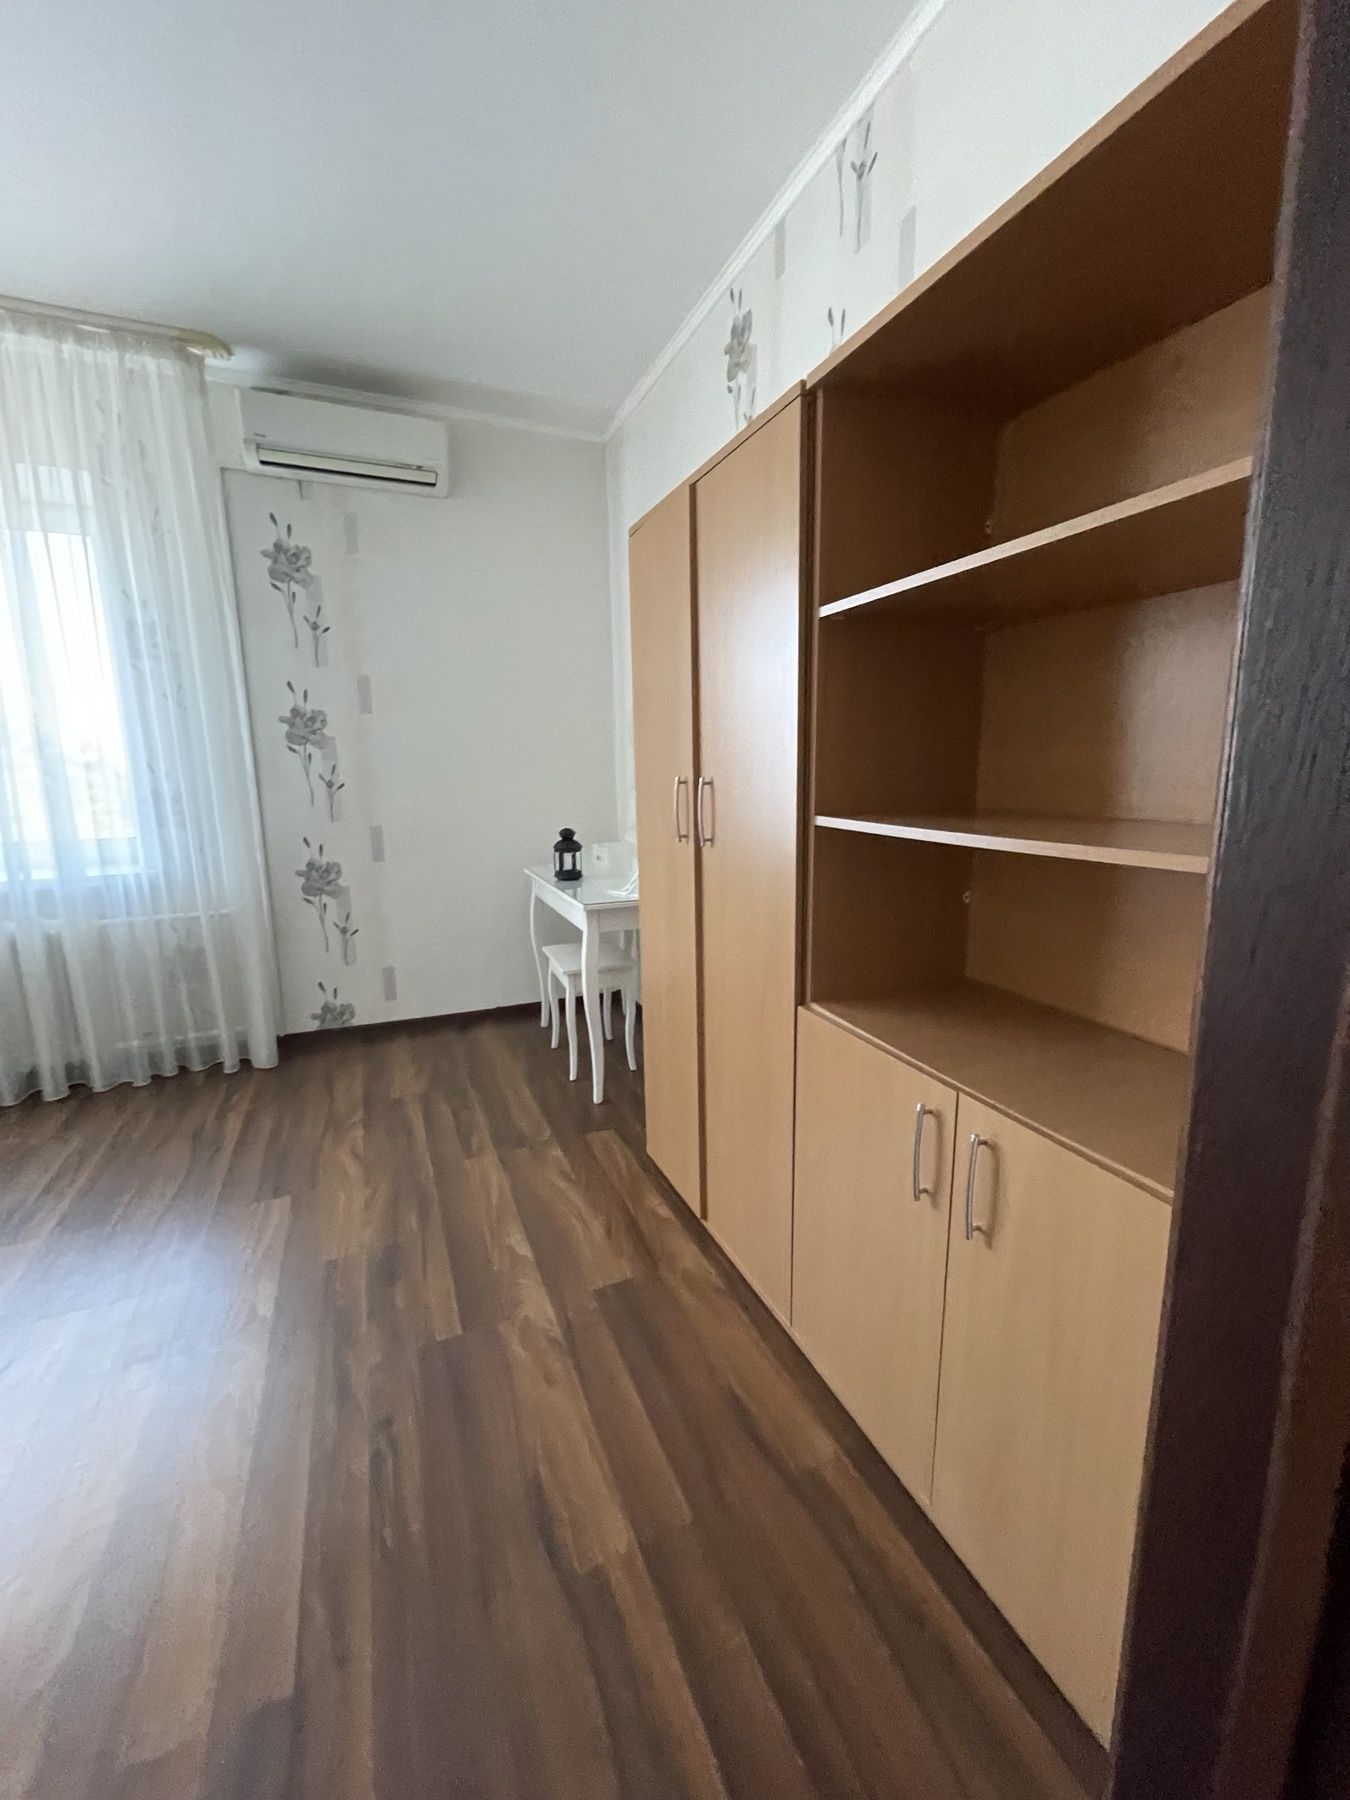 Продажа 2- х комнатной квартиры в г. Украинка.